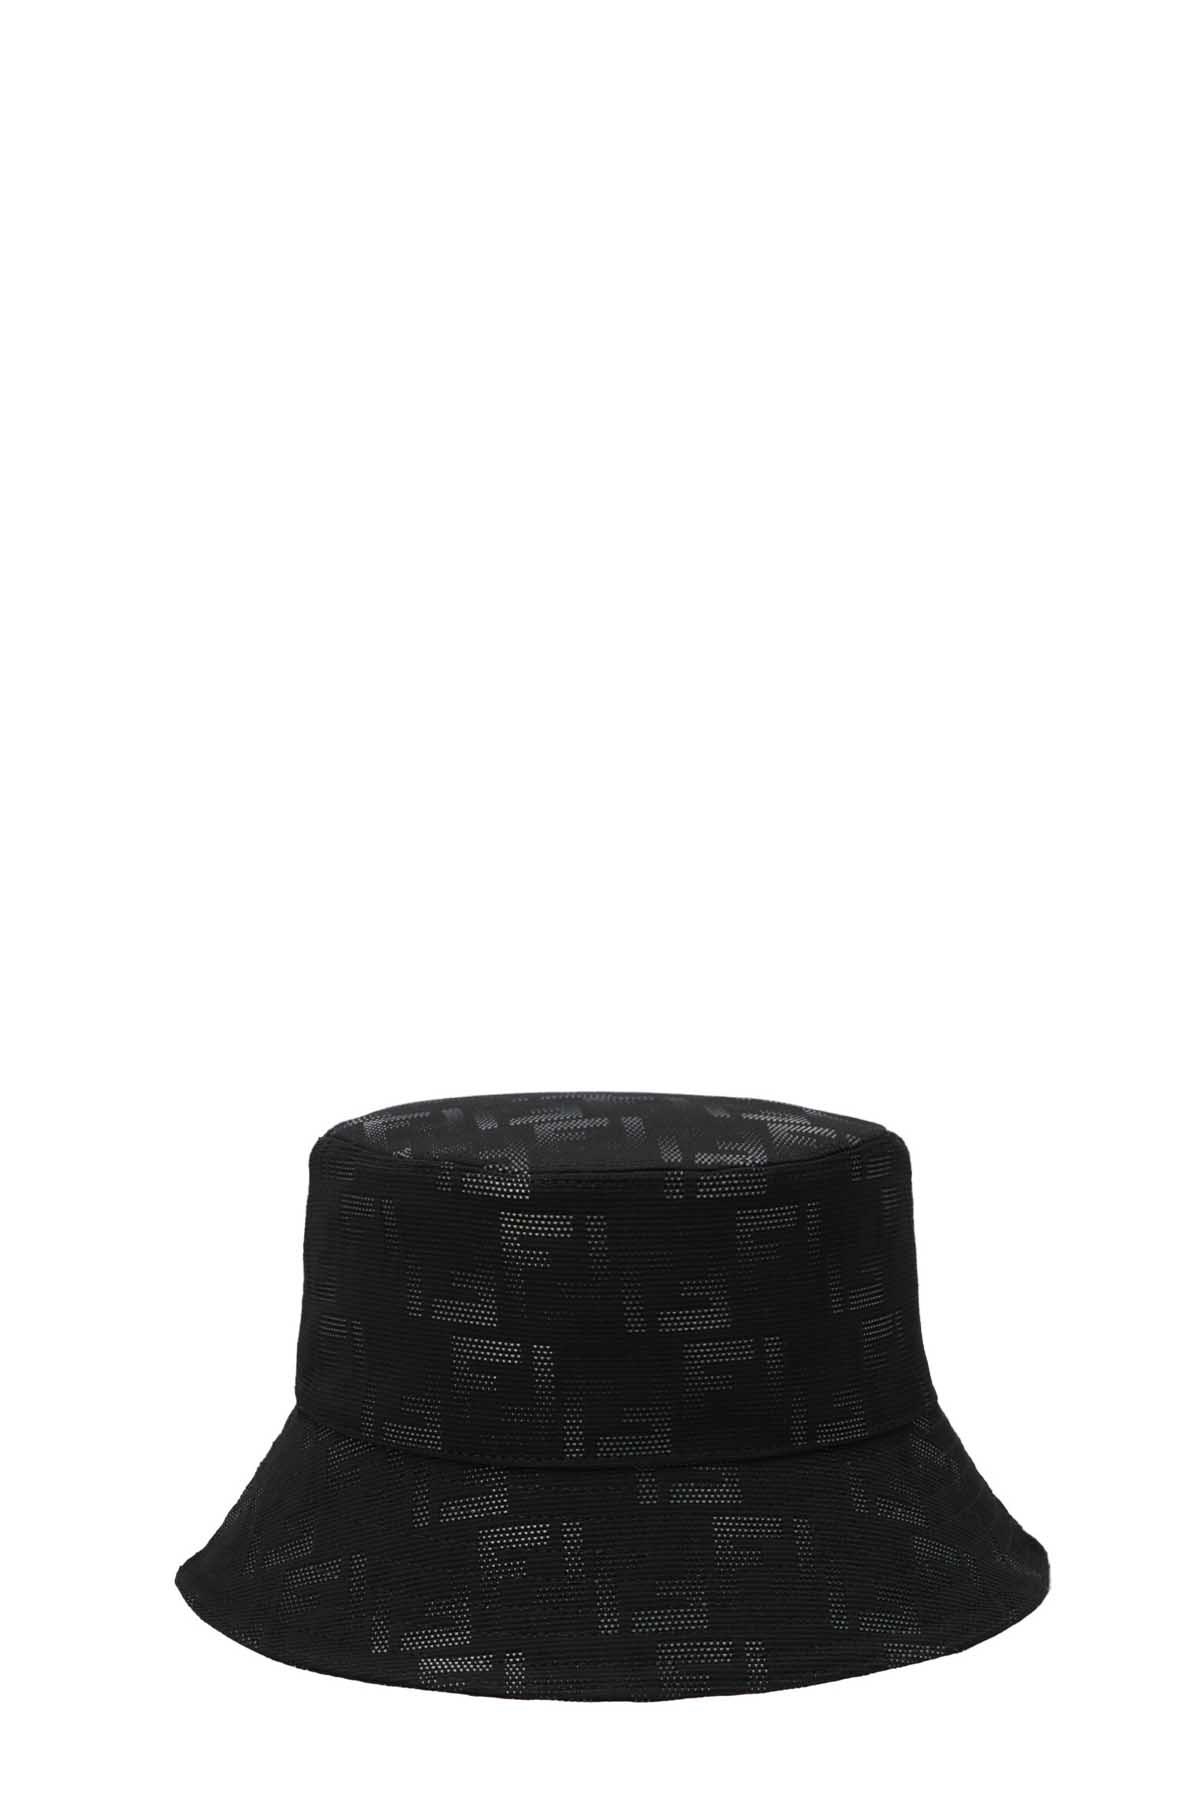 FENDI Ff Logo Bucket Hat